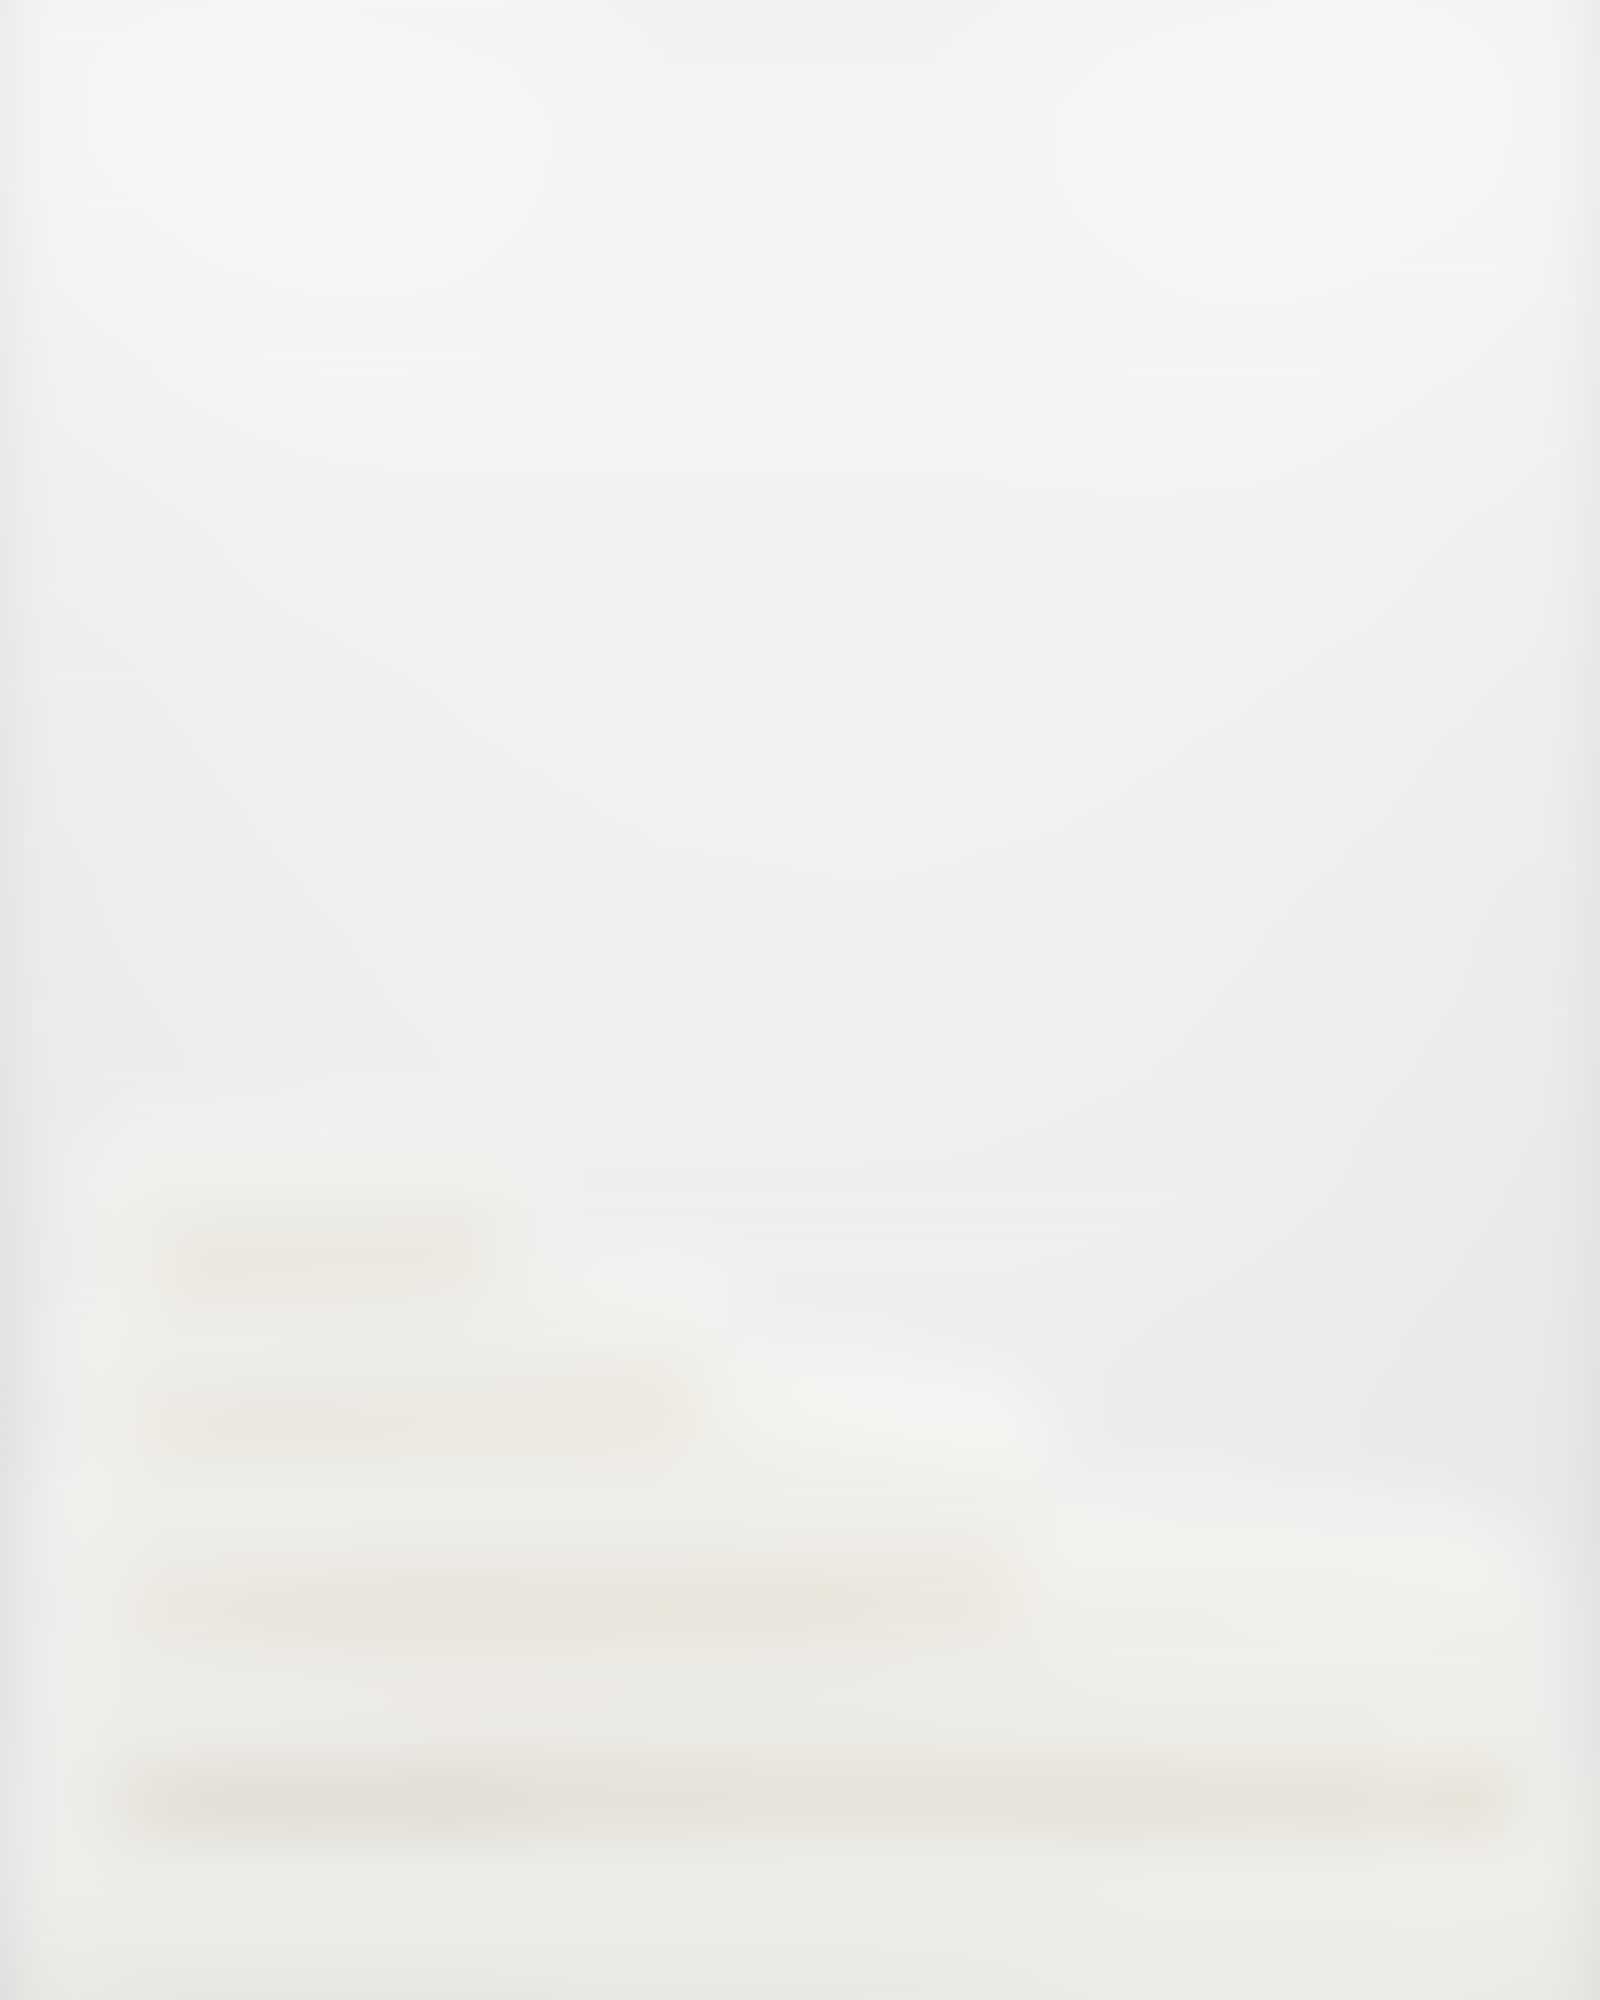 Möve - Superwuschel - Farbe: snow - 001 (0-1725/8775) - Handtuch 60x110 cm Detailbild 3